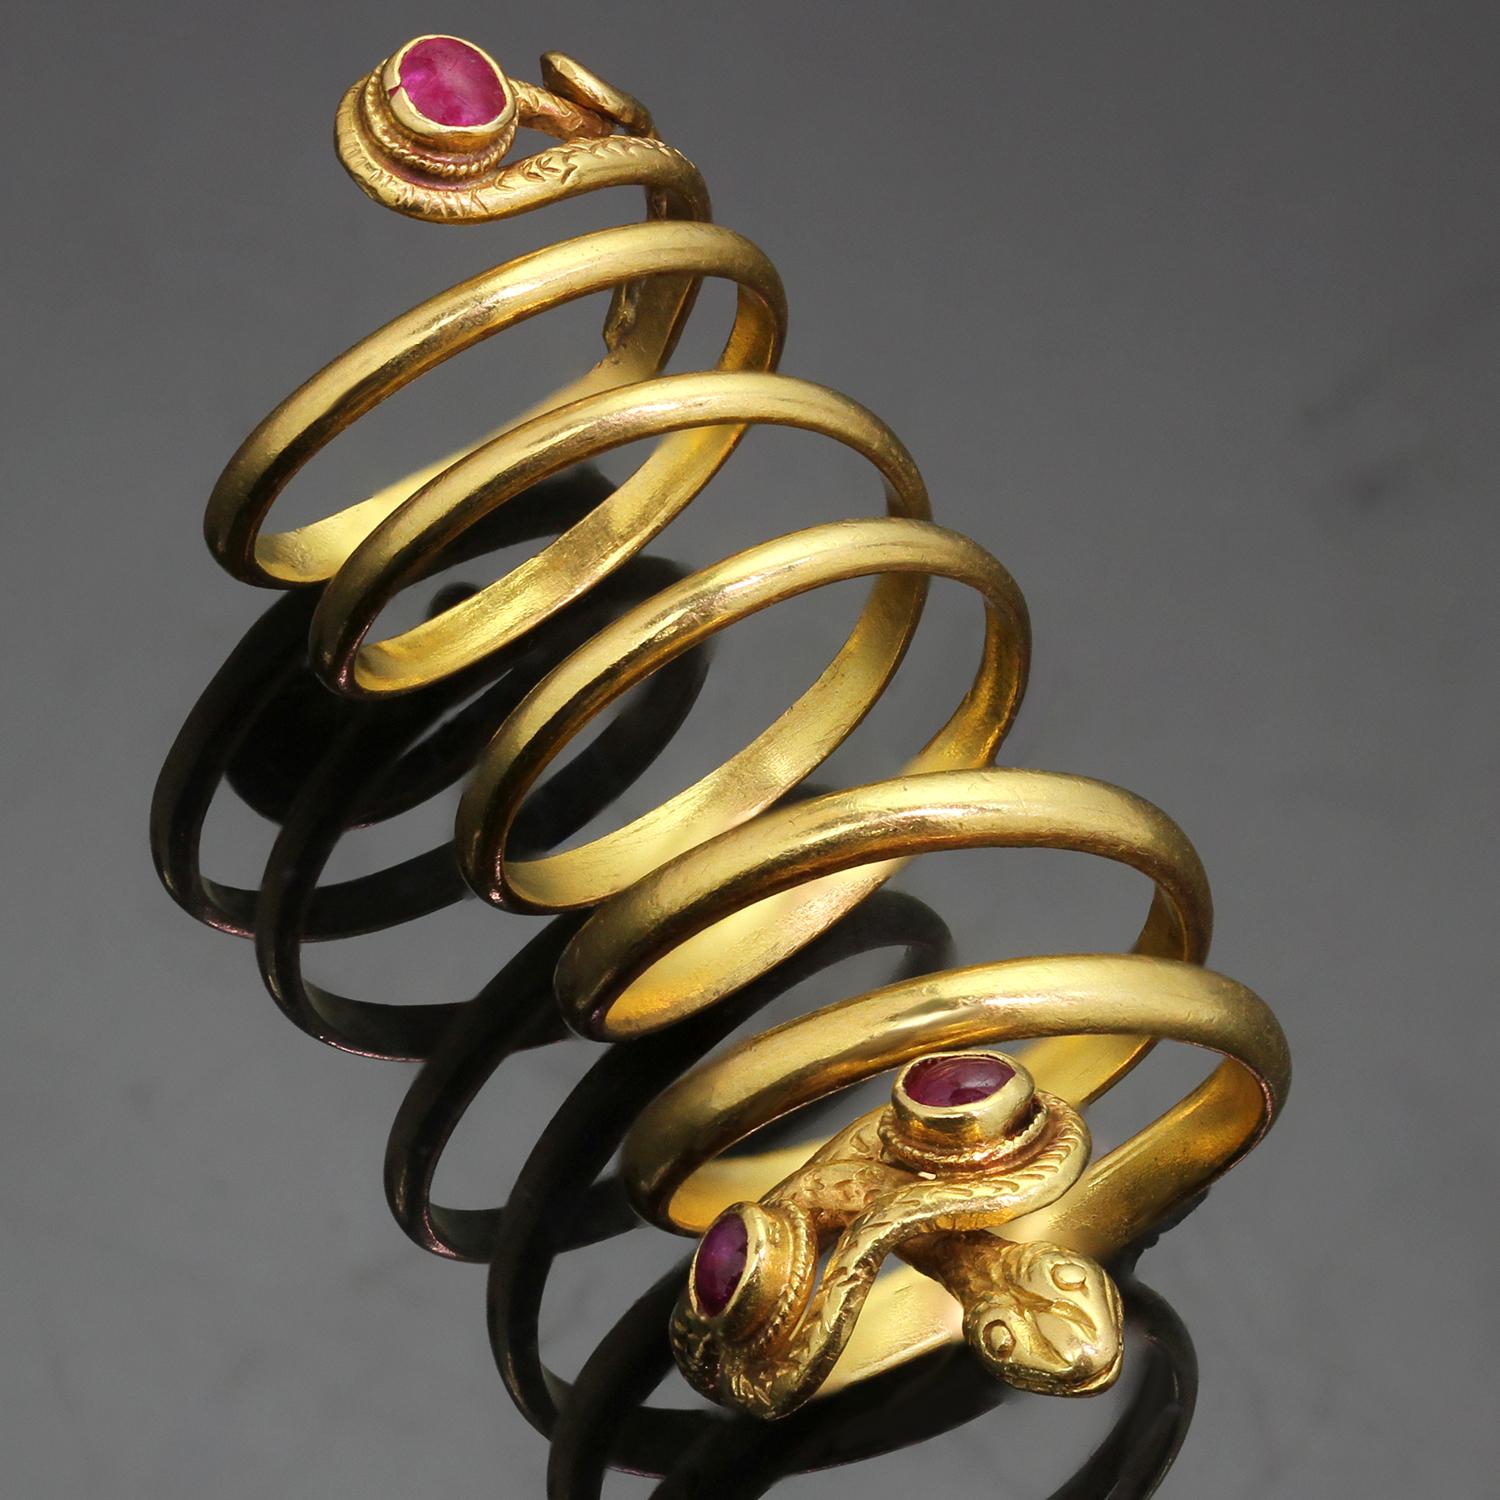 Dieser wunderschöne Vintage-Ring von Zolotas im Stil des Archaeological Revival zeigt ein zeitloses, gewundenes Schlangendesign, das aufwändig in 22 Karat Gelbgold gefertigt und mit einem Paar Cabochon-Rubinen eingefasst ist. Hergestellt in